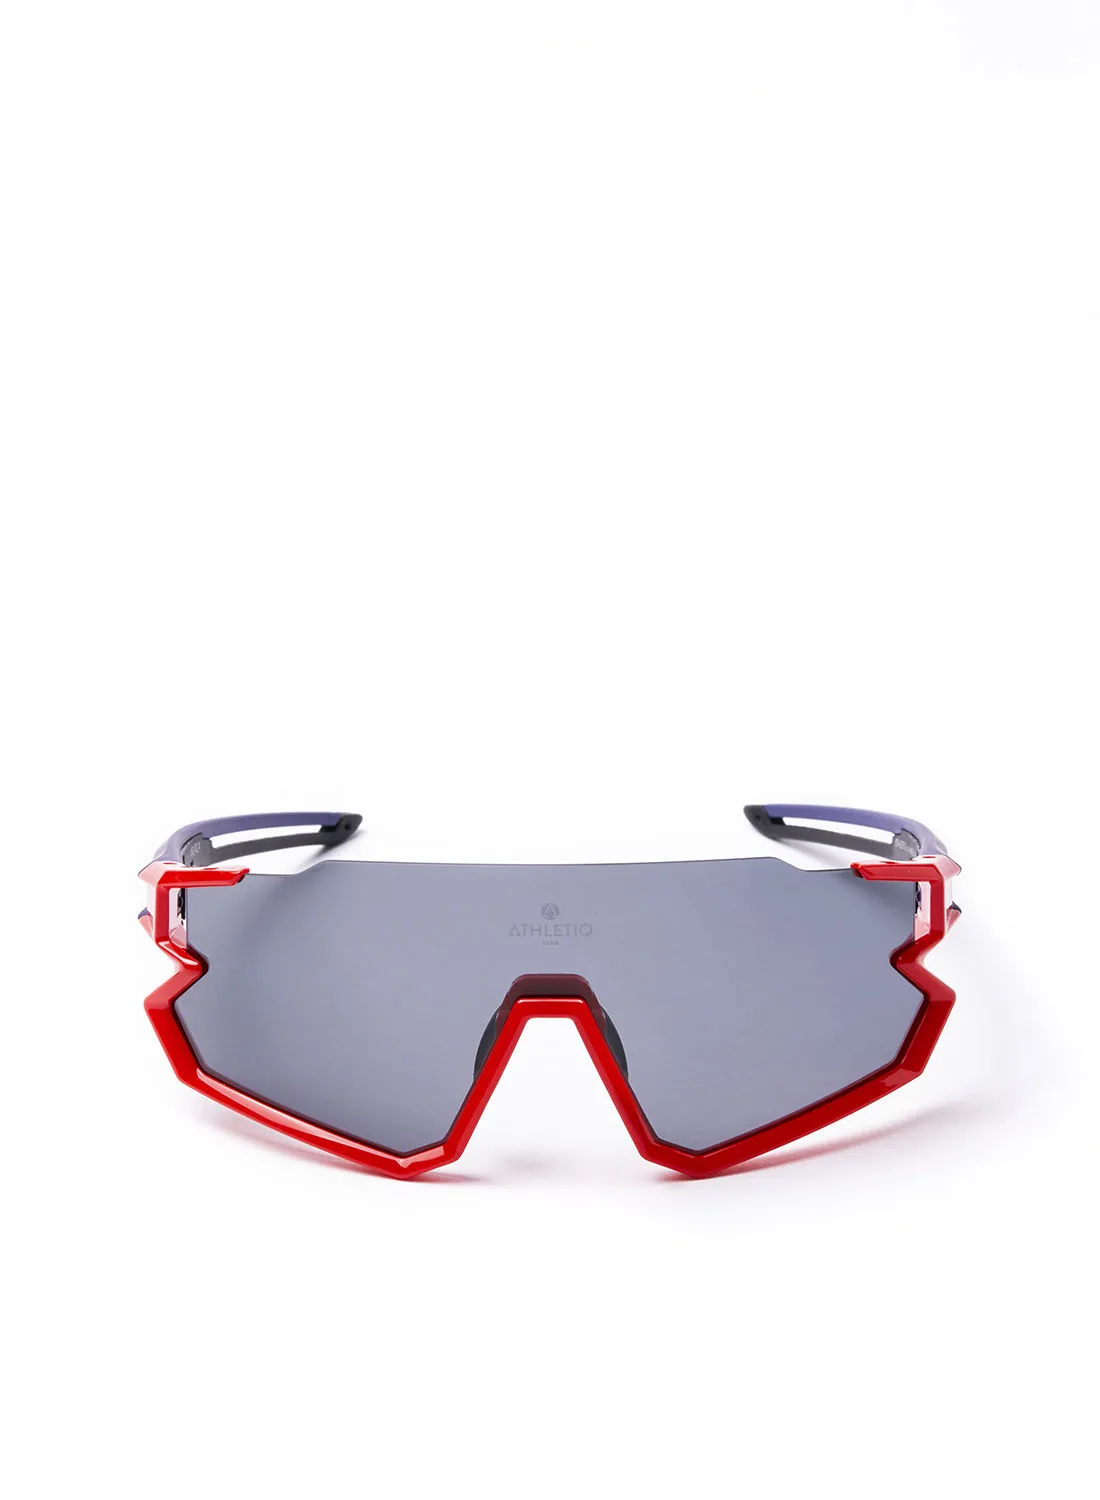 نظارة شمسية رياضية لركوب الدراجات - Athletiq Club جبل جيس - إطار أحمر وأزرق مع عدسة متعددة الطبقات باللون الأسود الدخاني